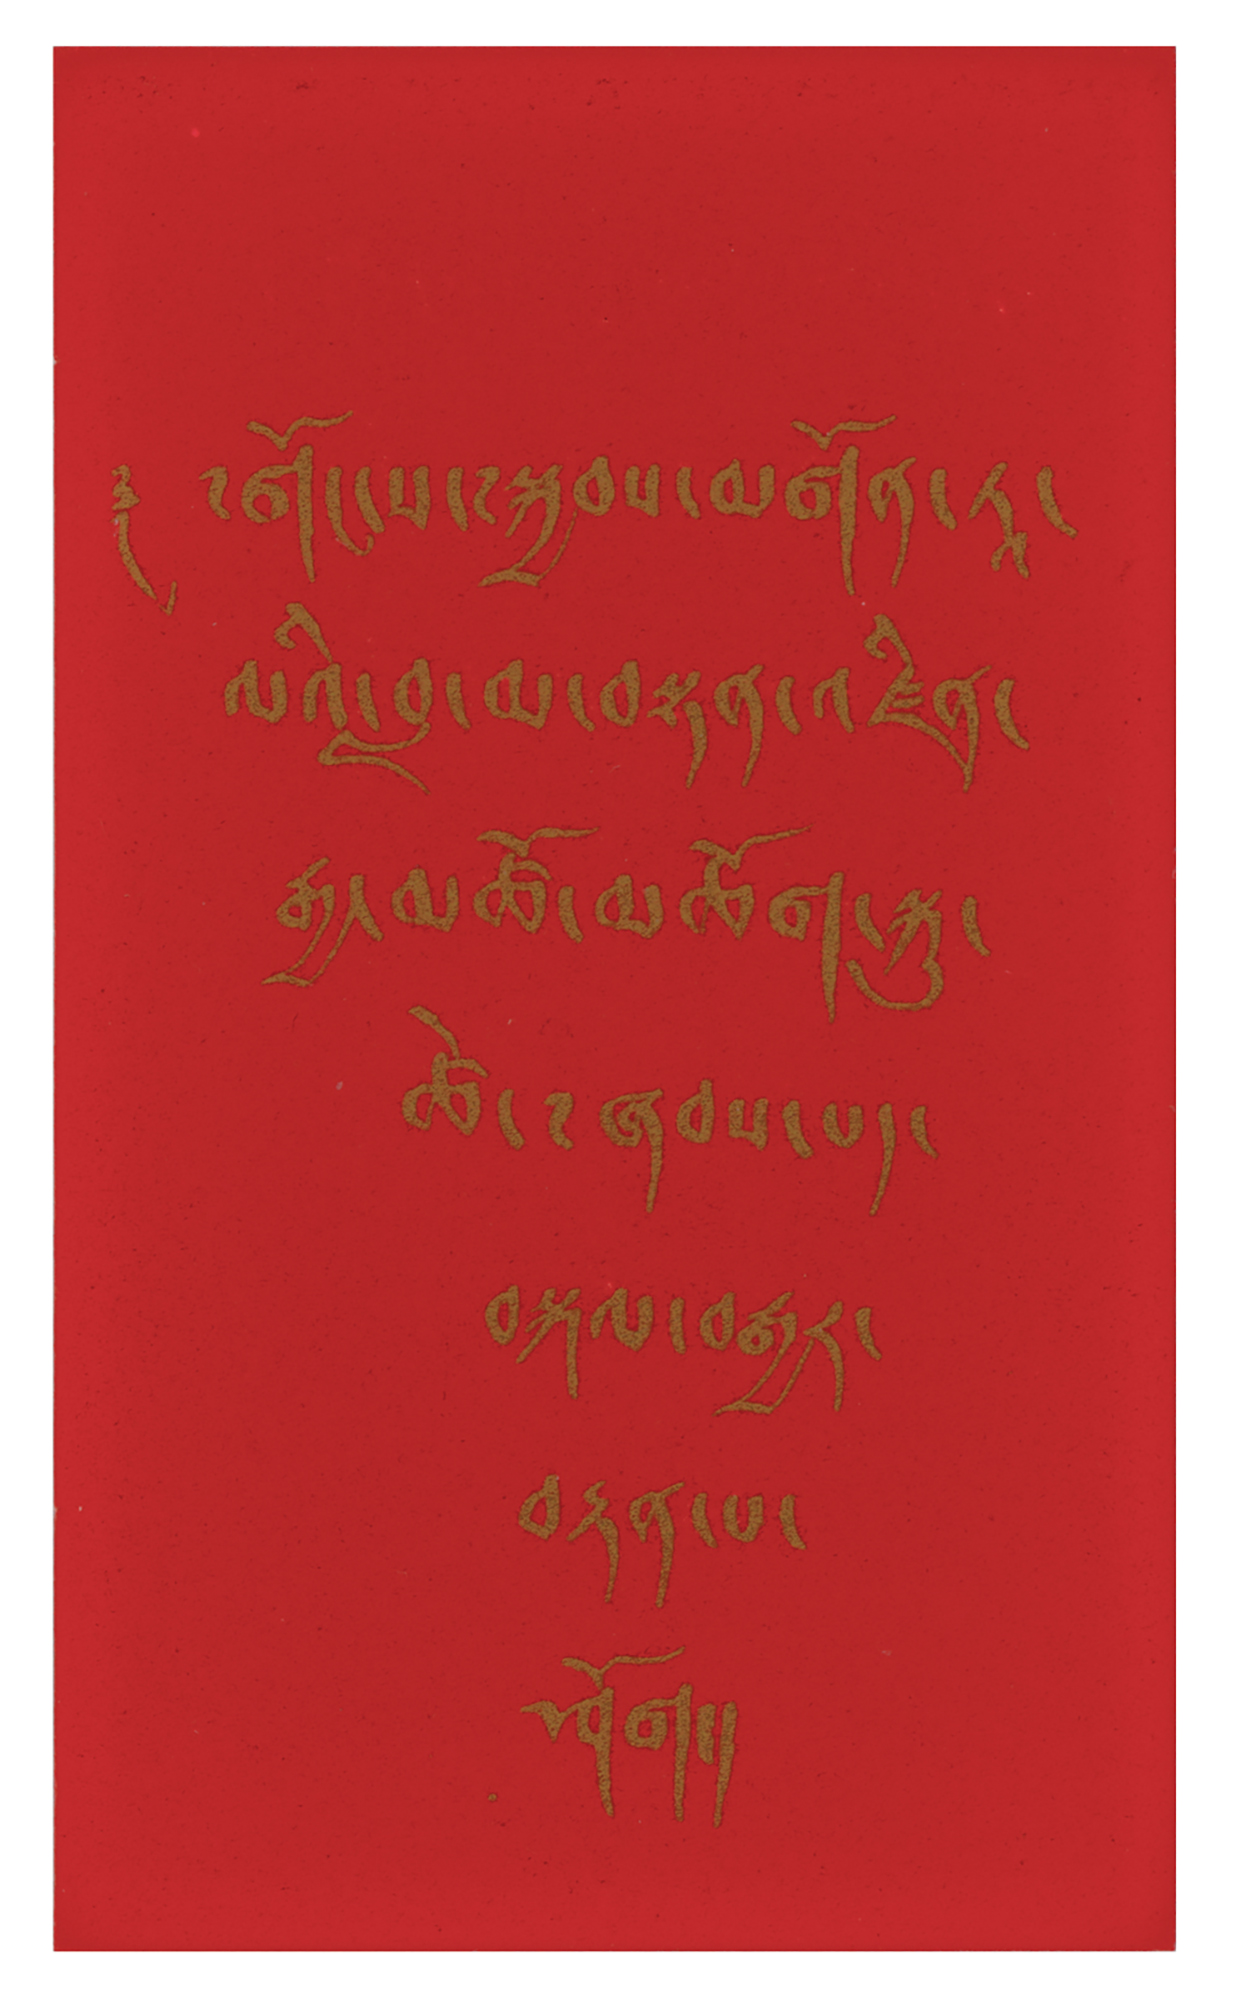 Lot #230 Dalai Lama Signed Prayer Card - Image 2